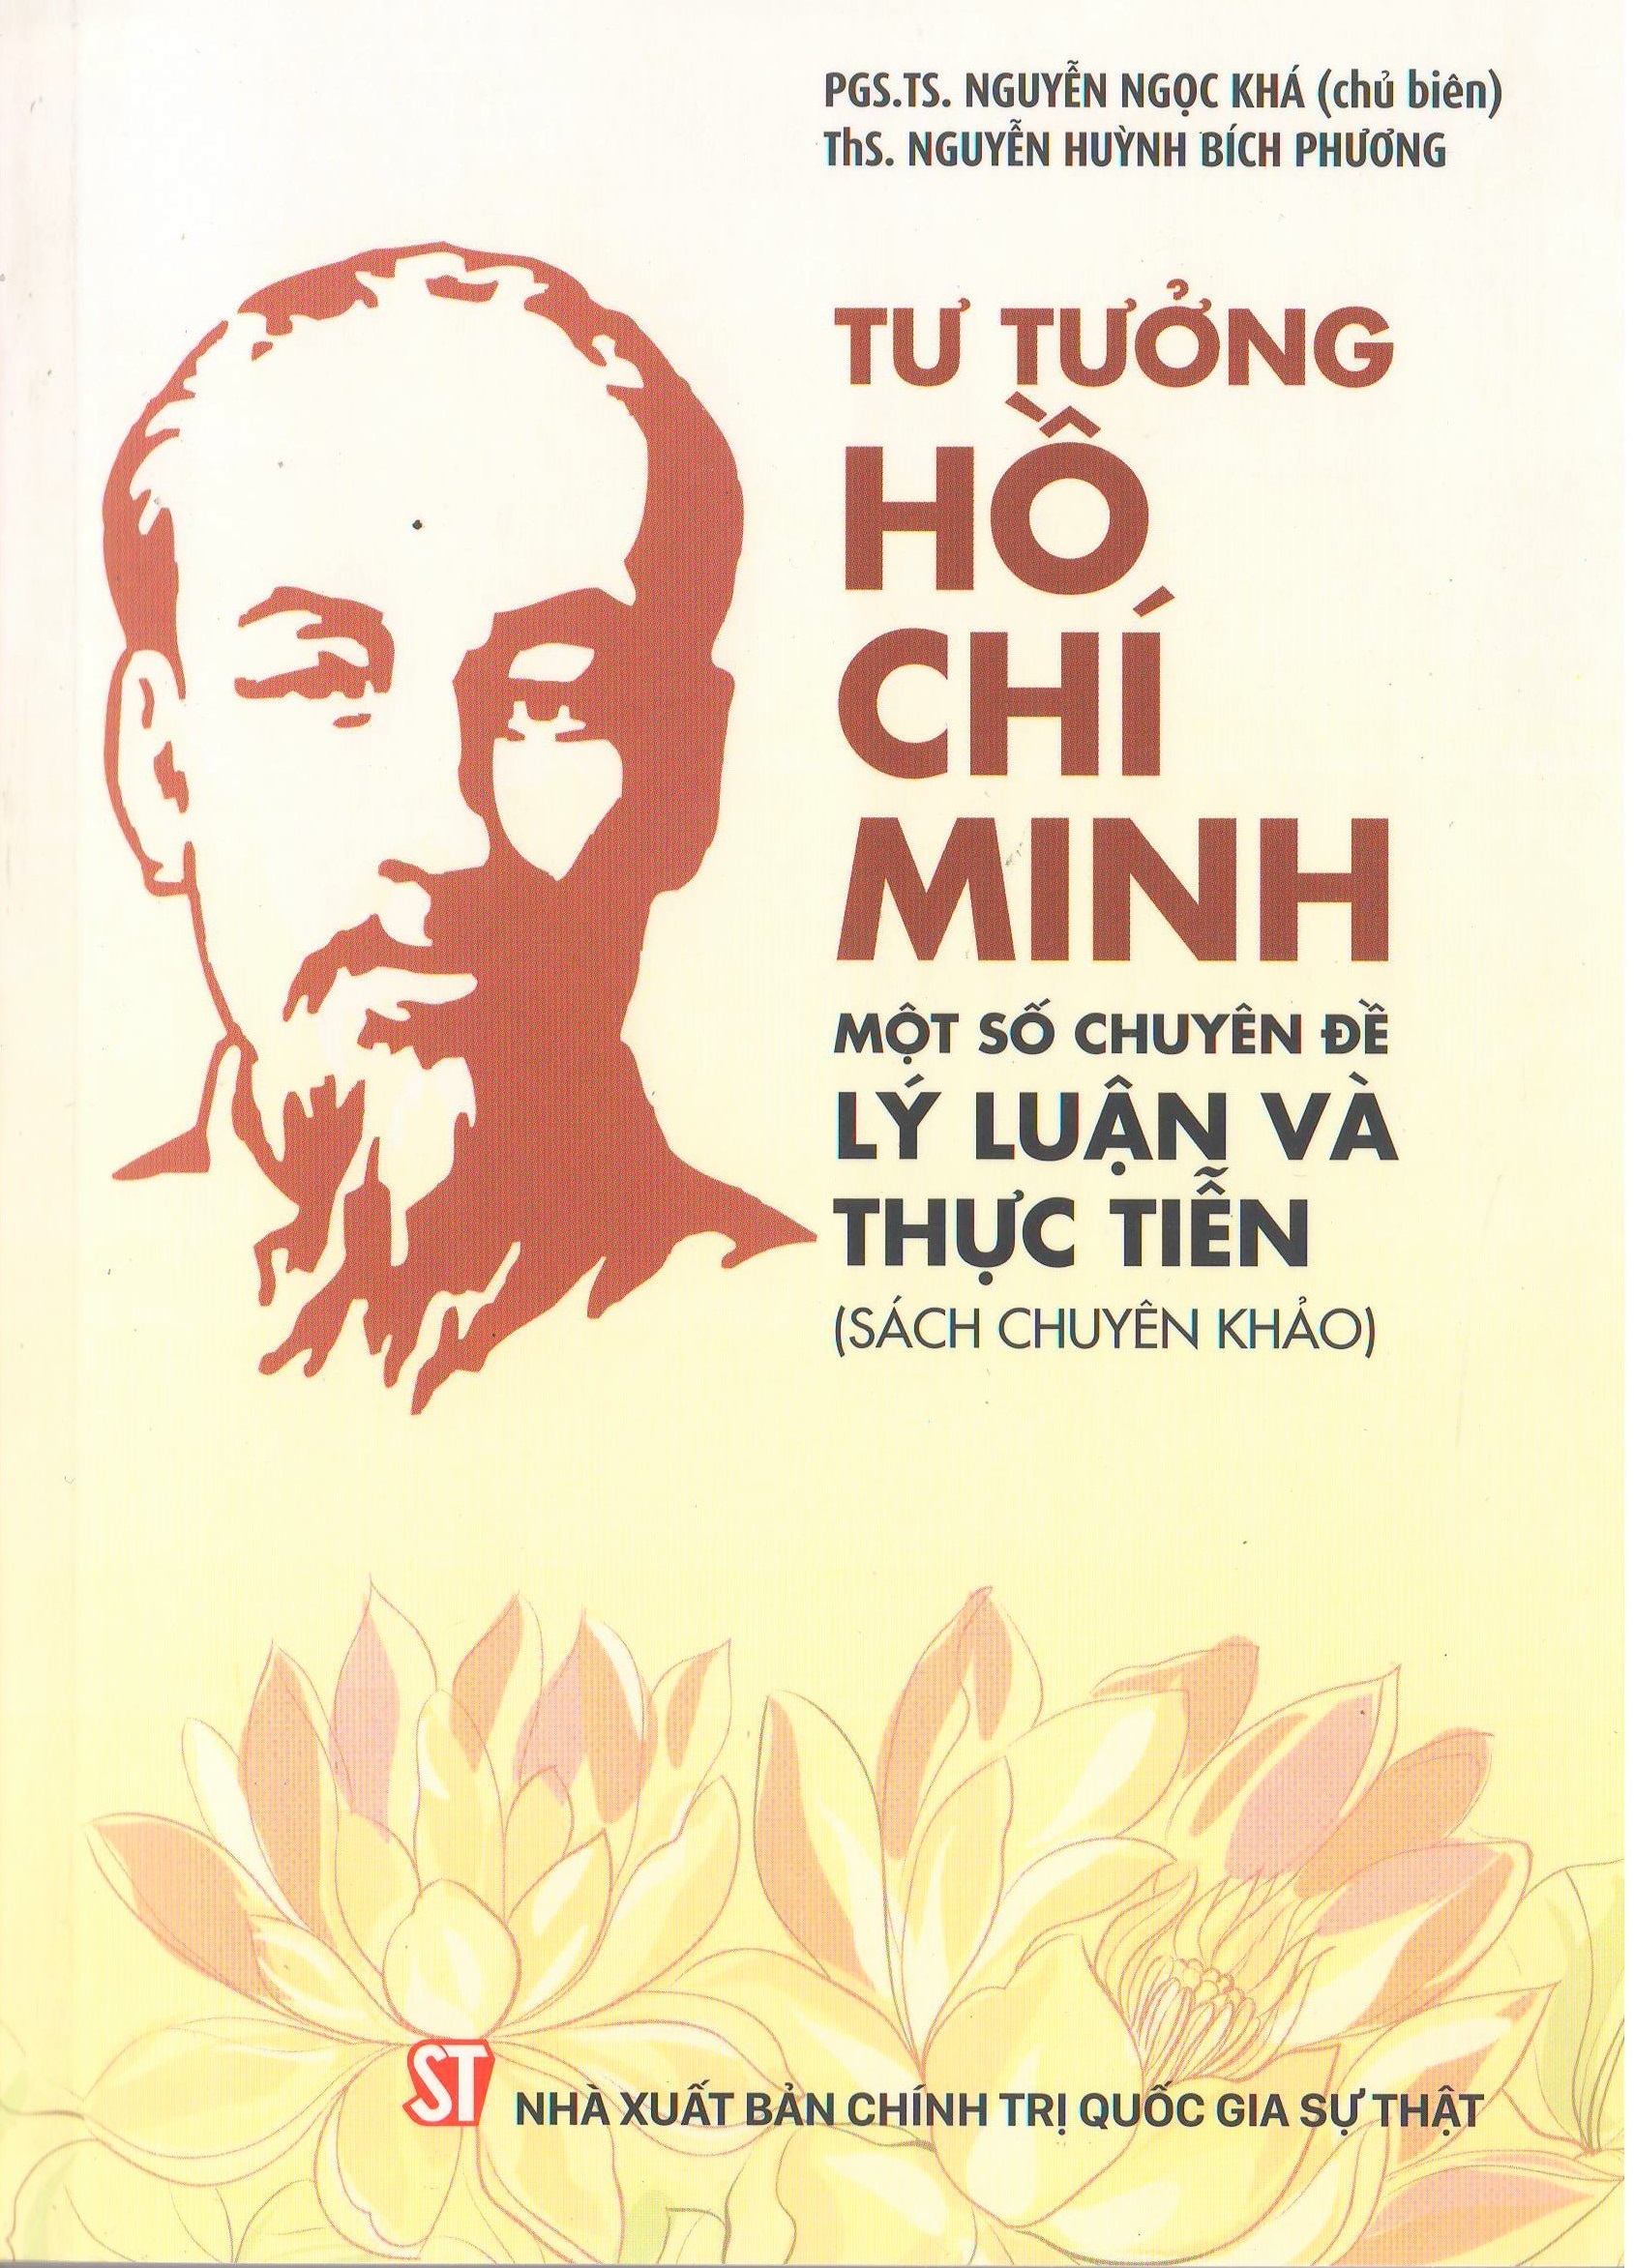 Tư tưởng Hồ Chí Minh: Một số chuyên đề lý luận và thực tiễn (Sách chuyên khảo)